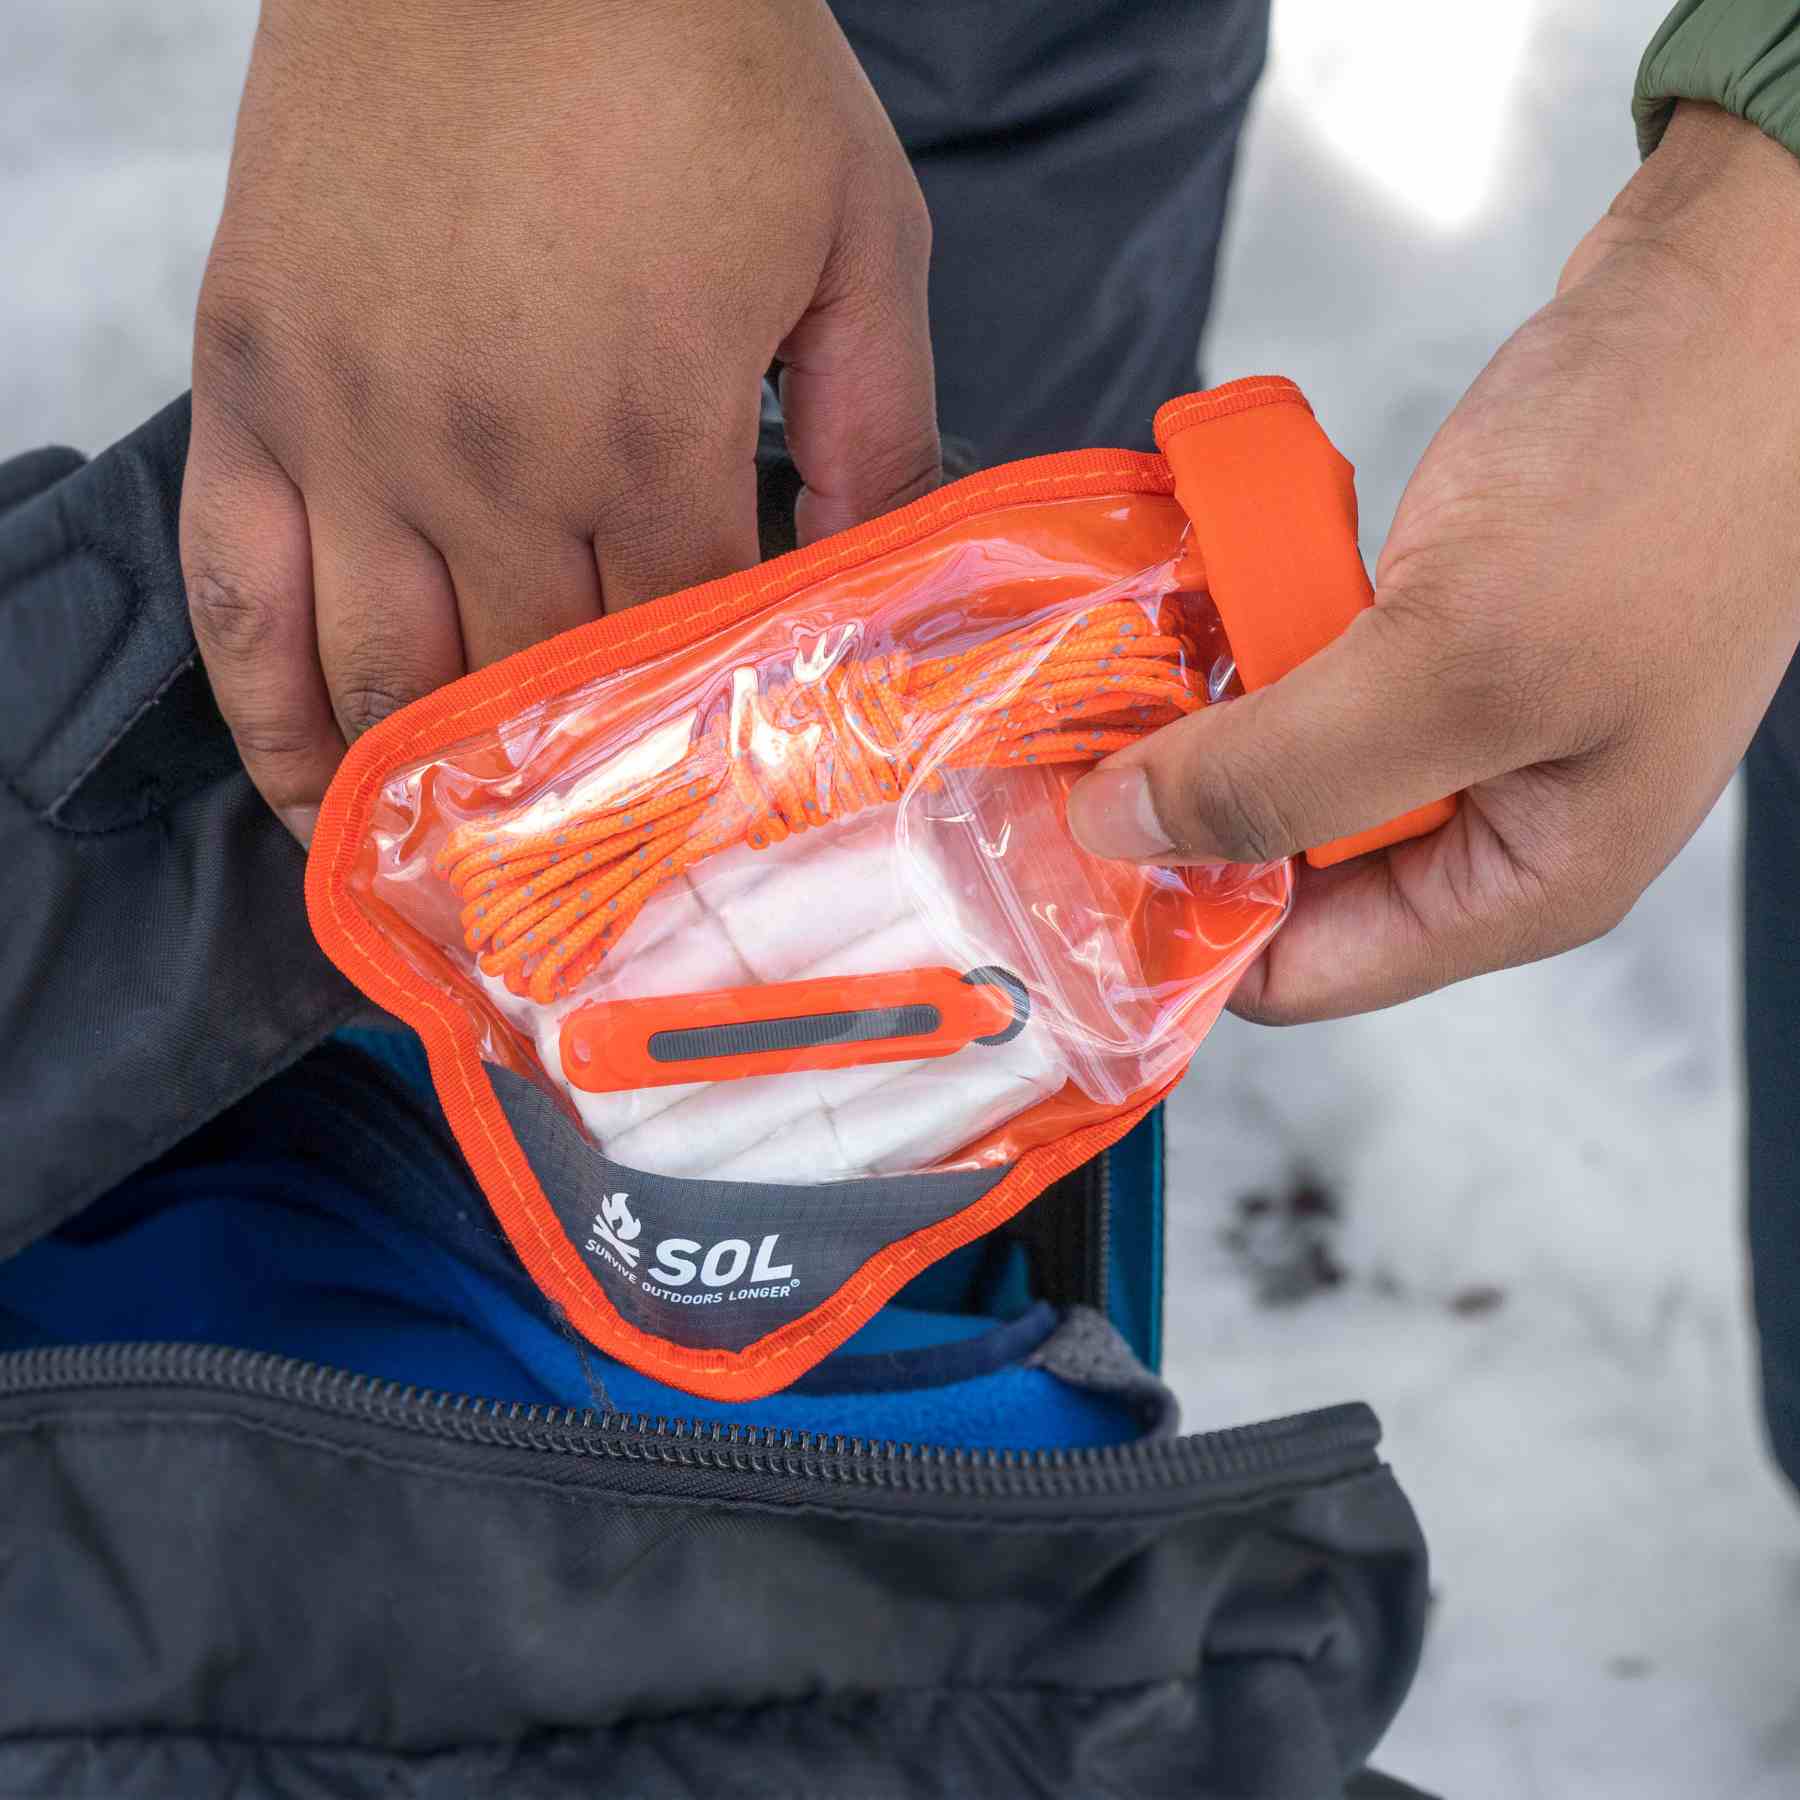 Fire Lite Kit in Dry Bag pulling kit from black backpack